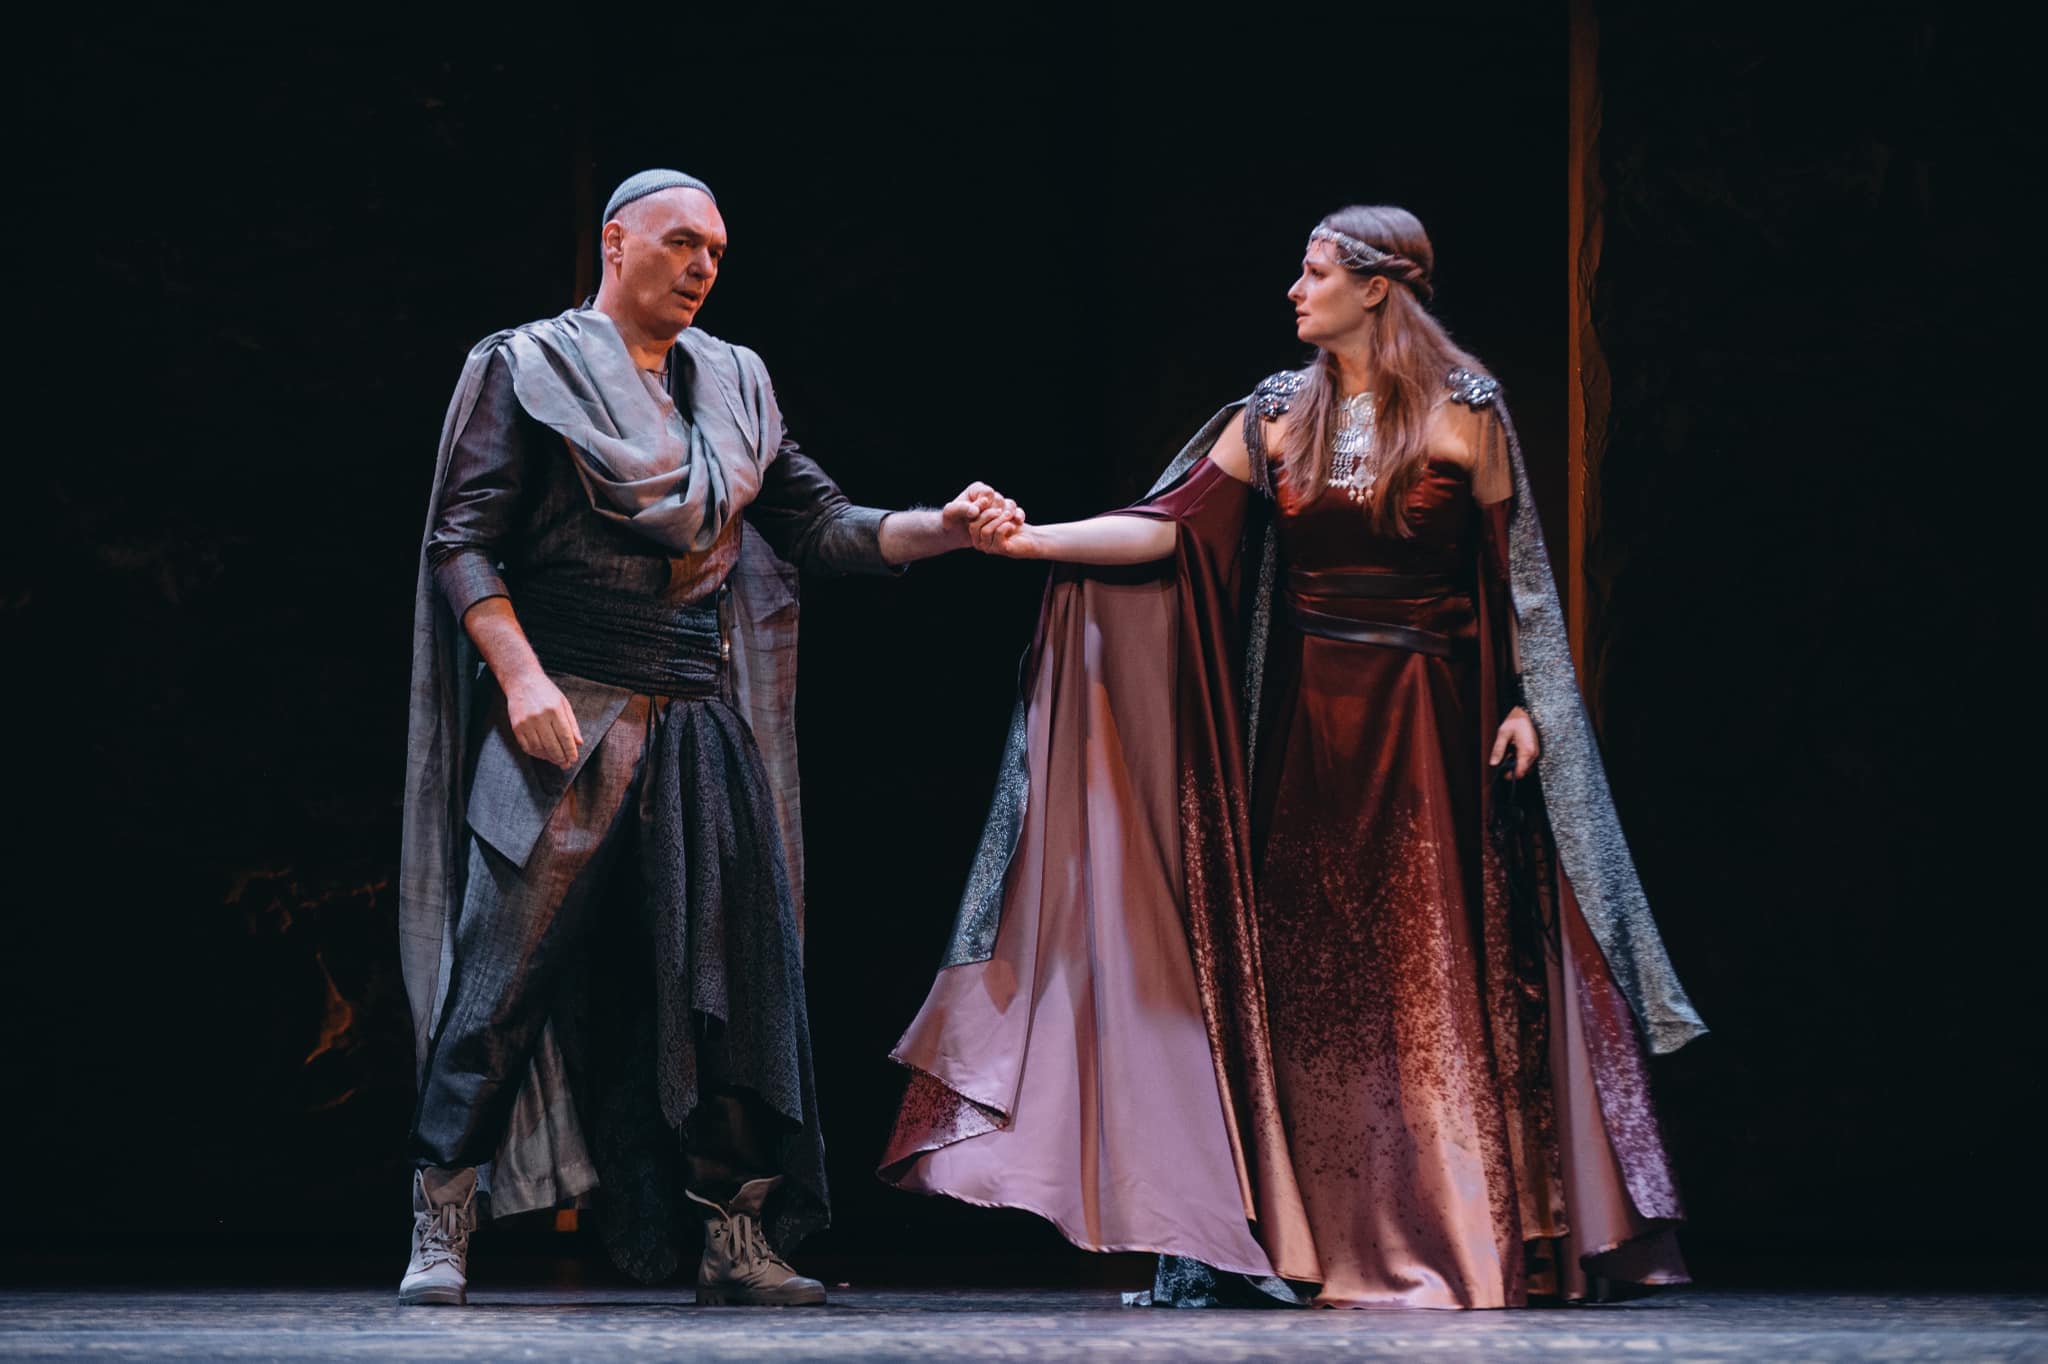 Kraków Opera opens Verdi’s “Nabucco” with Andrzej Dobber